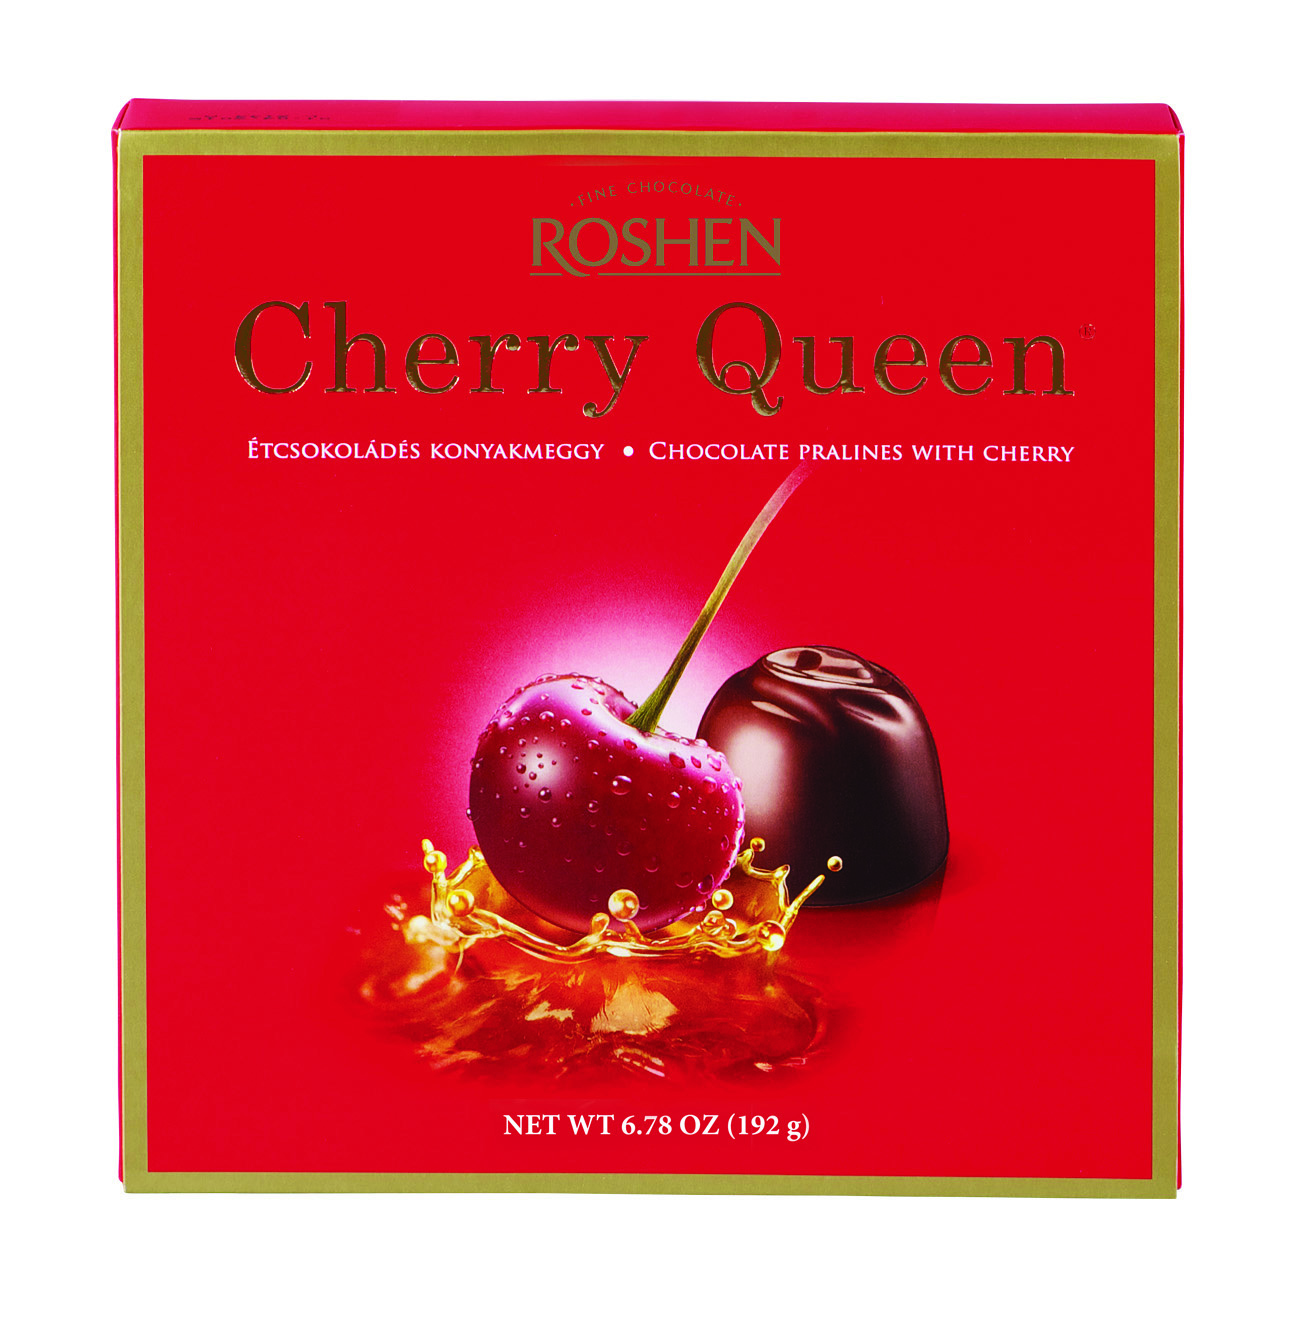 Cherry Queen konyakmeggy 192g